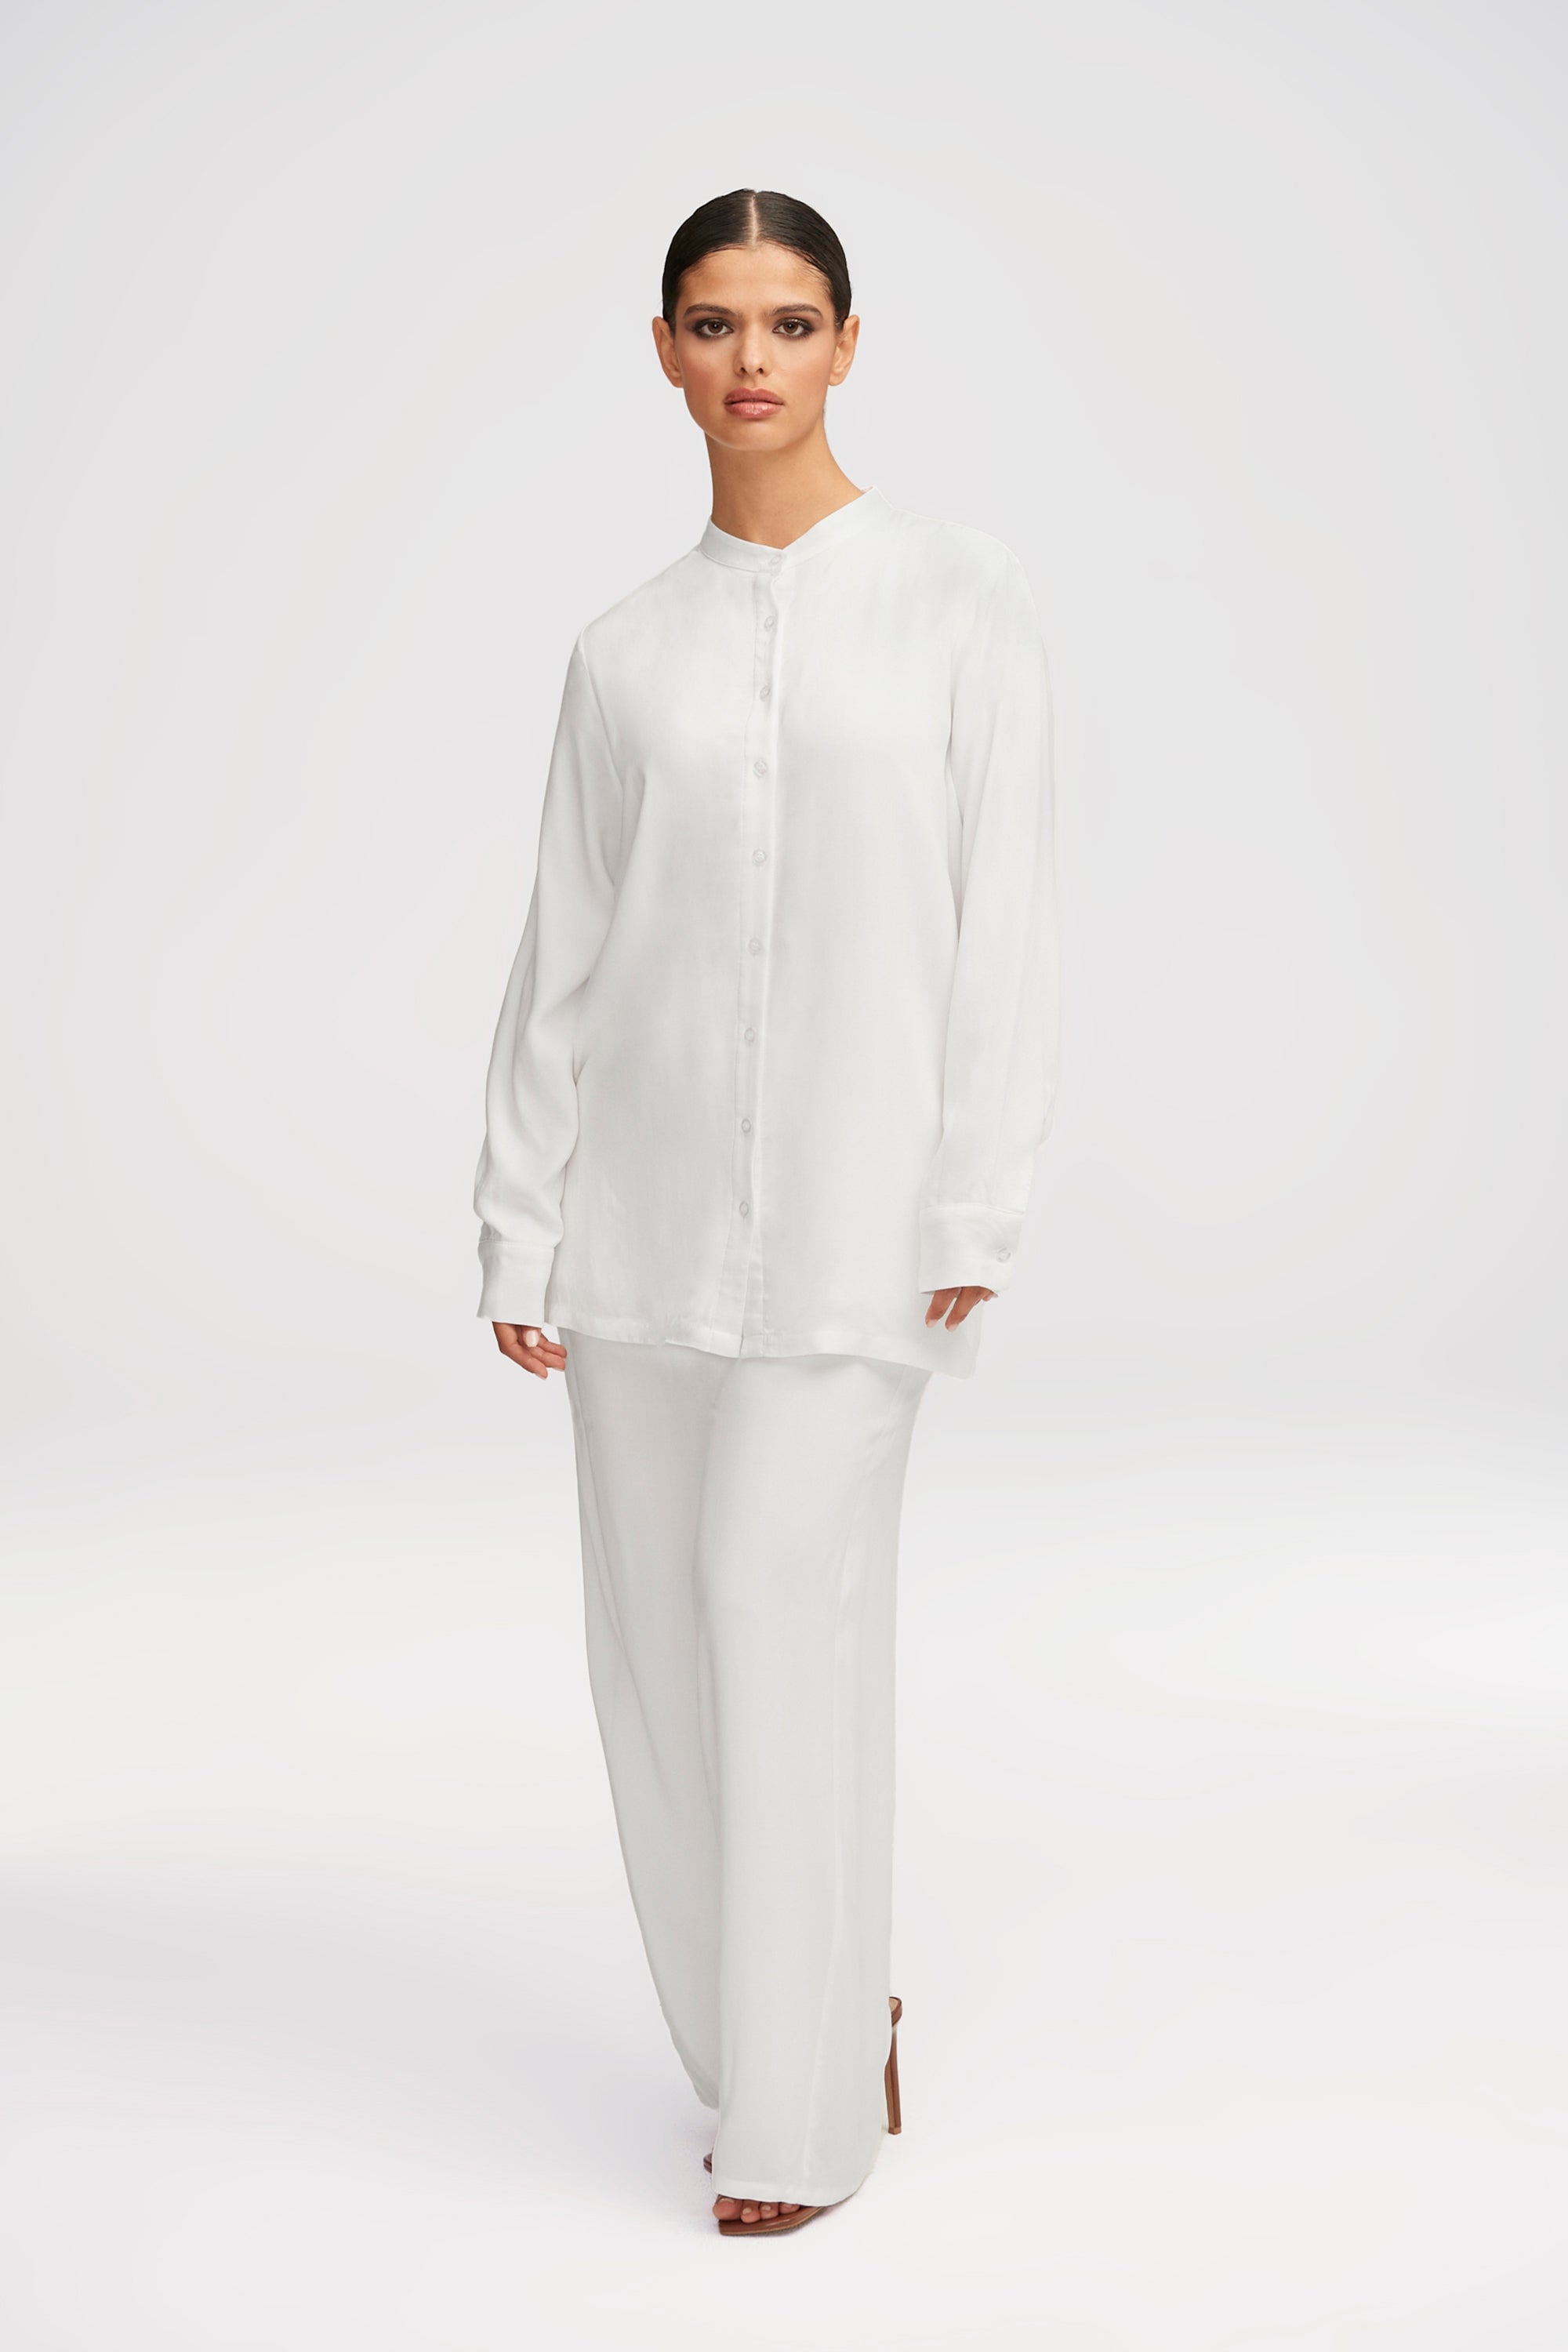 Alina Button Down Side Slit Top - White Clothing saigonodysseyhotel 